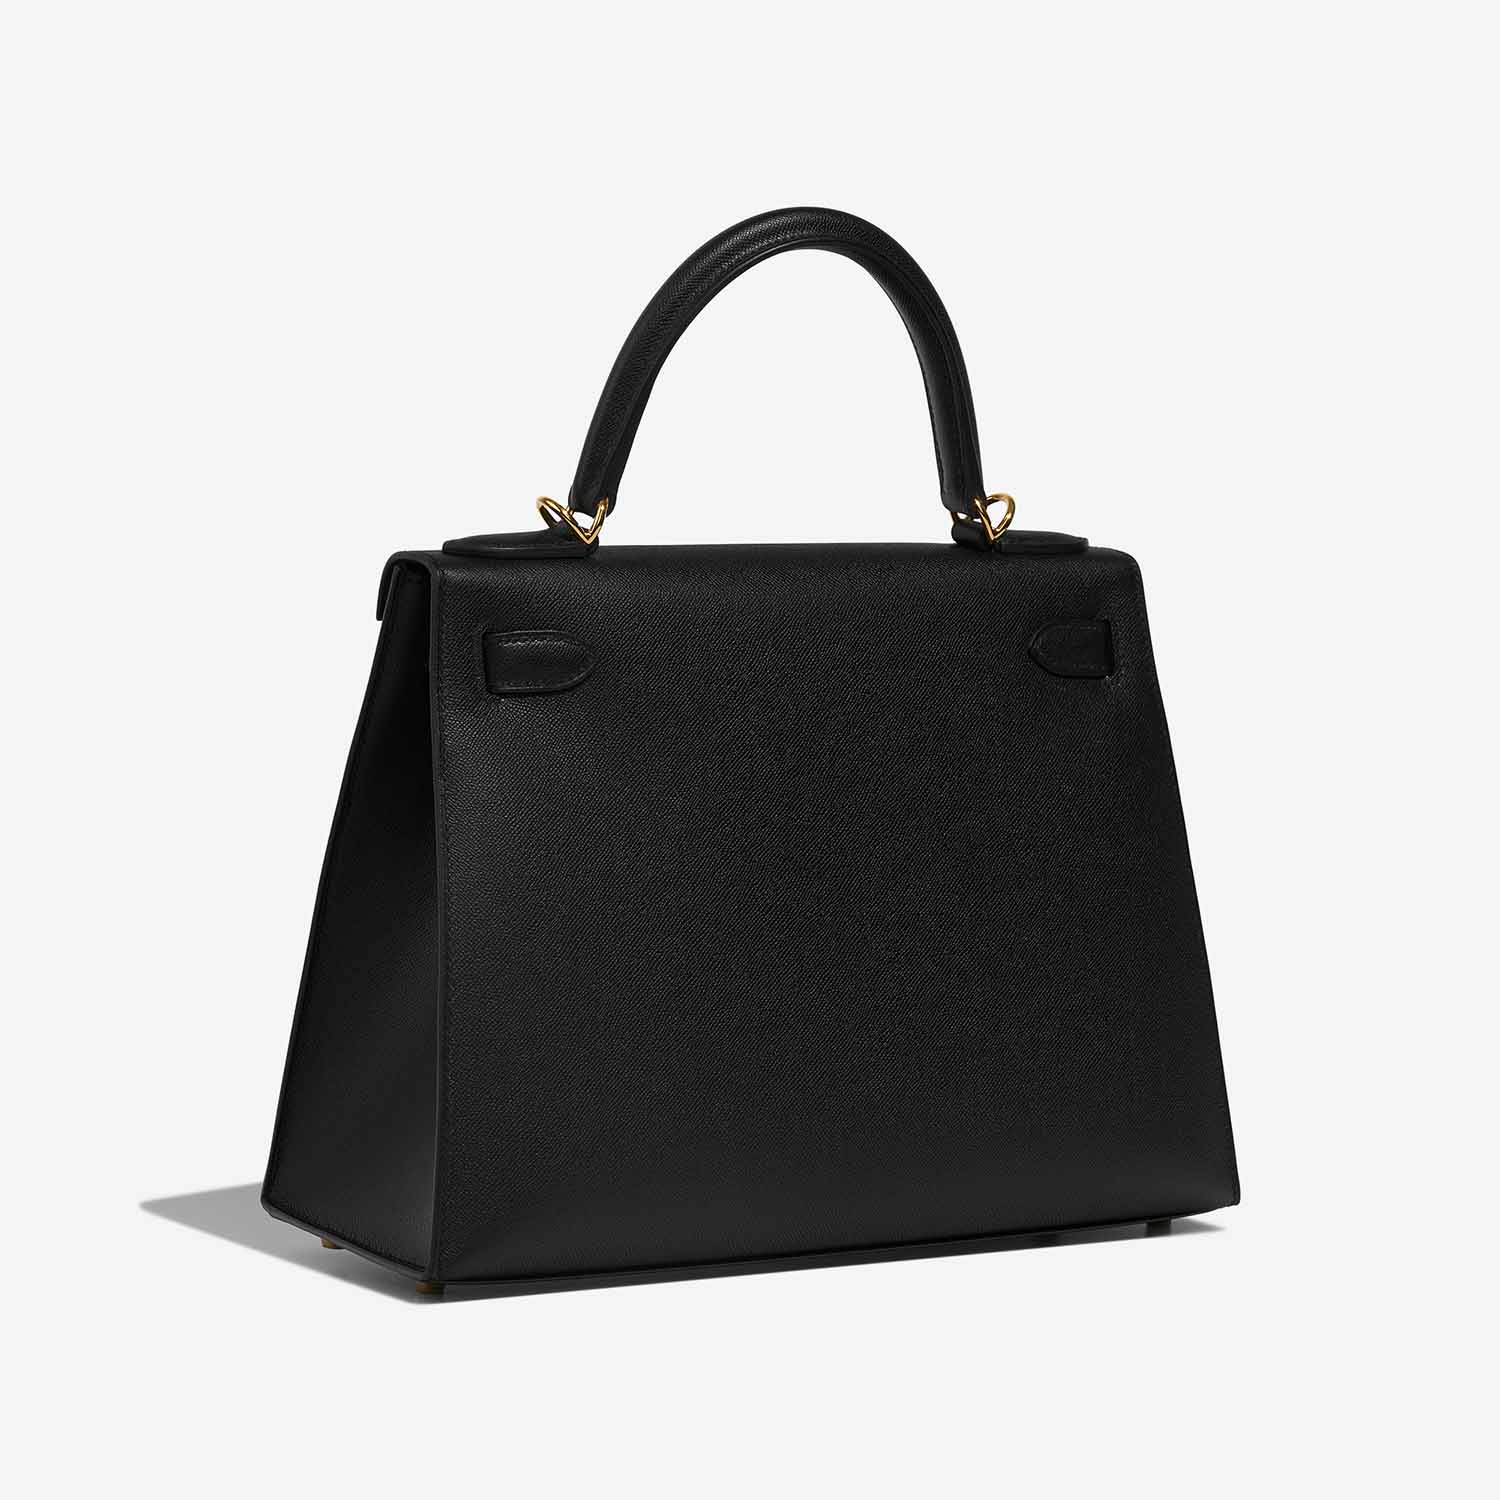 Hermès Kelly 28 Black Side Back | Verkaufen Sie Ihre Designer-Tasche auf Saclab.com